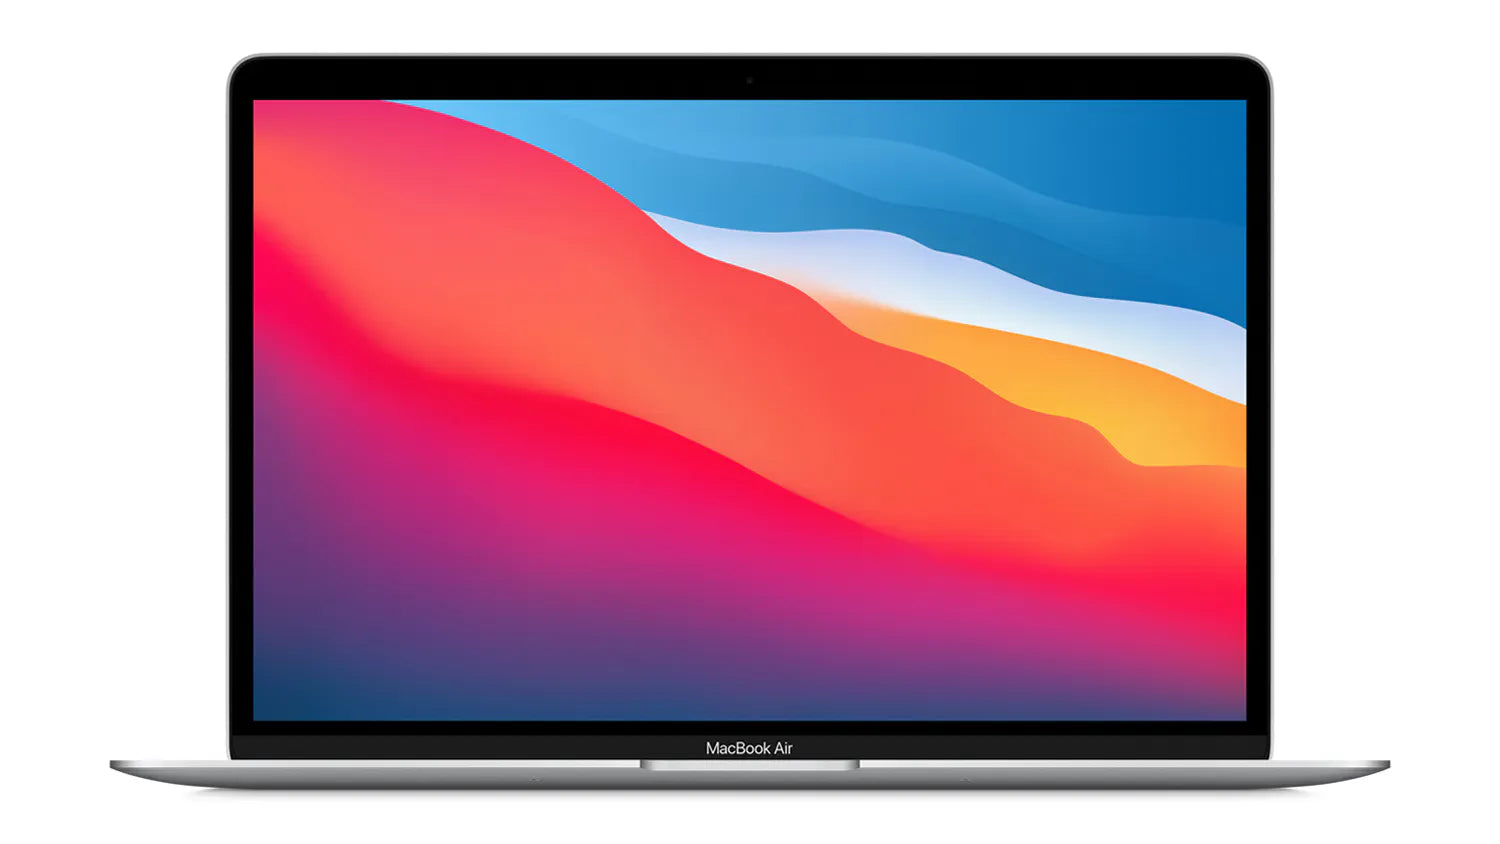 MacBook Air (Retina, 13-inch, 2020) Intel i3, 8GB RAM, 256GB A2179 Silver (Exc)